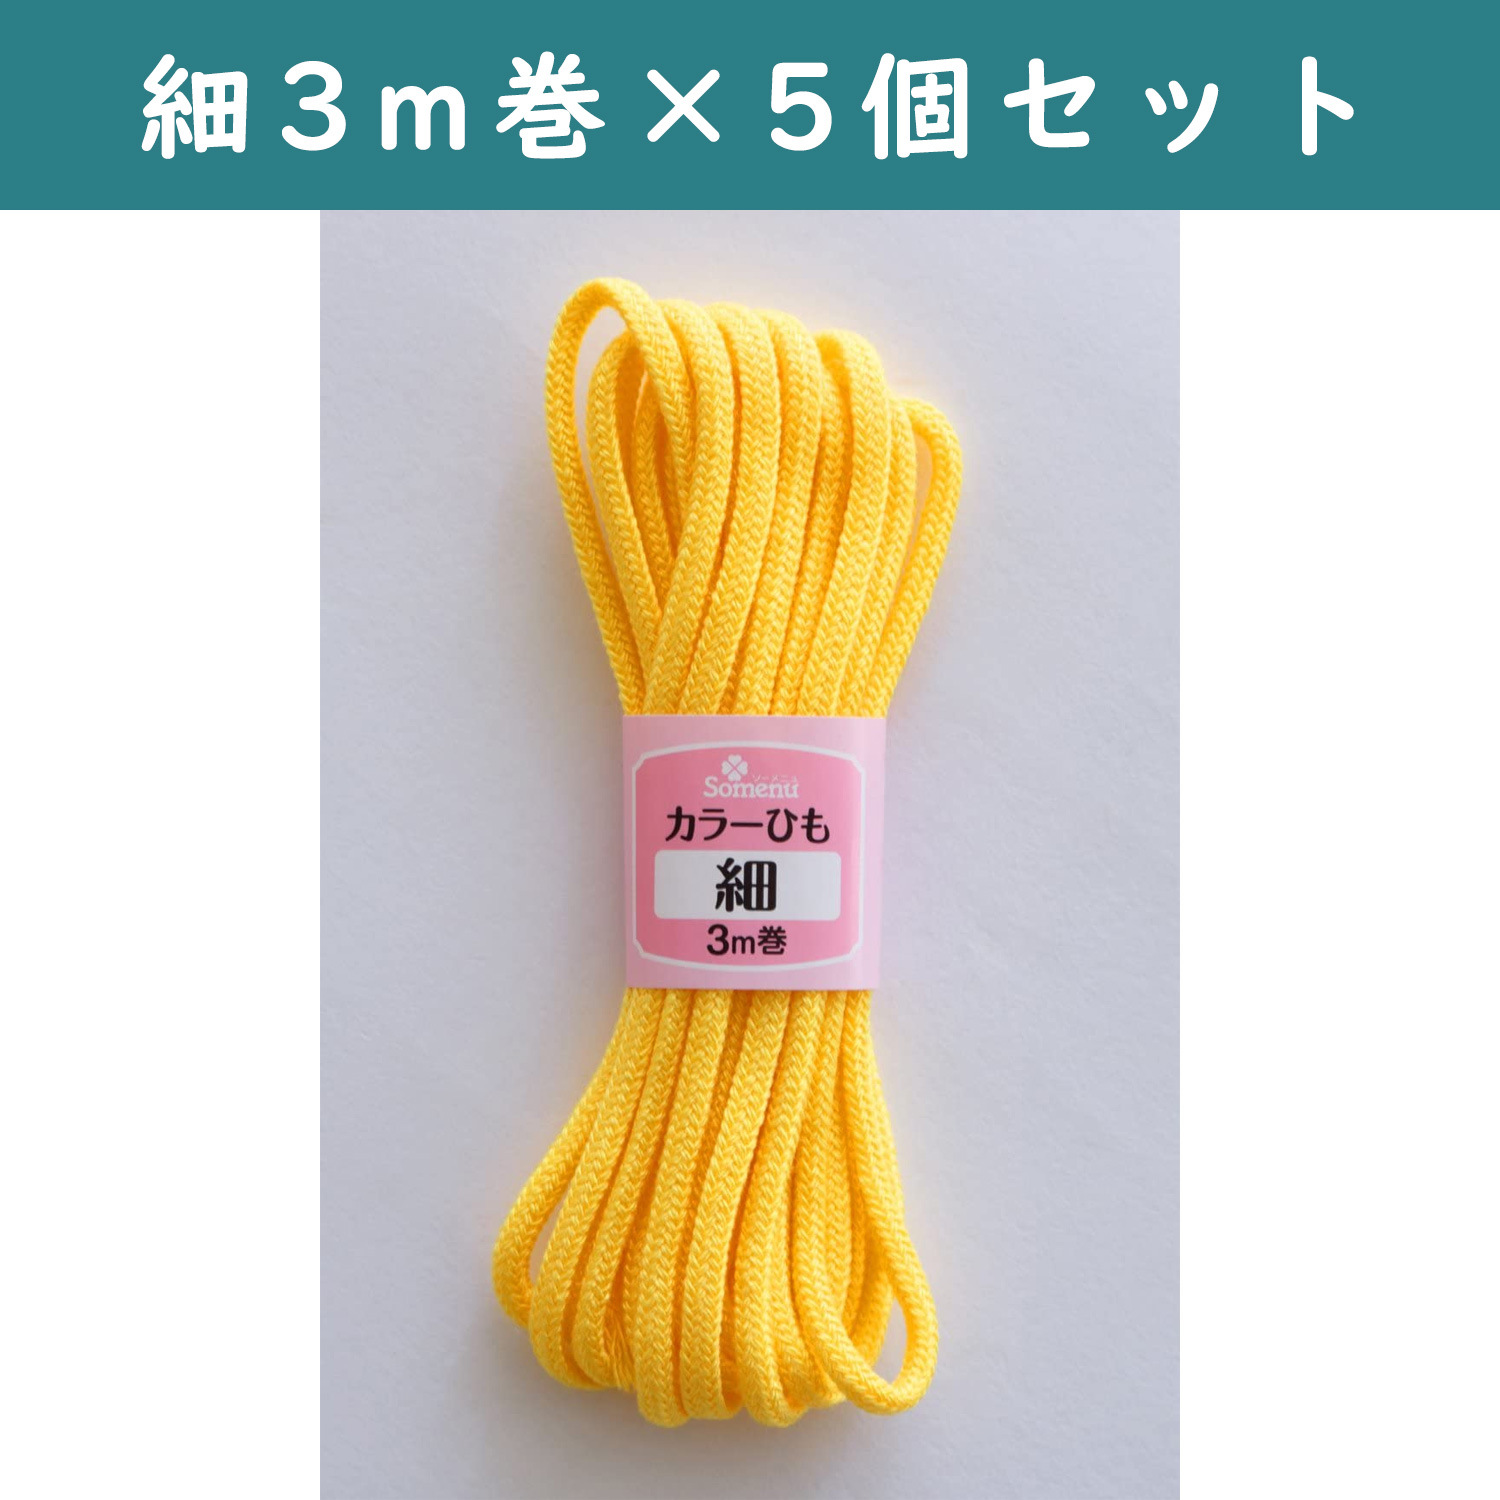 ■【5個】CL26-132-5set カラーひも 細 3m巻 黄色 5個セット (セット)